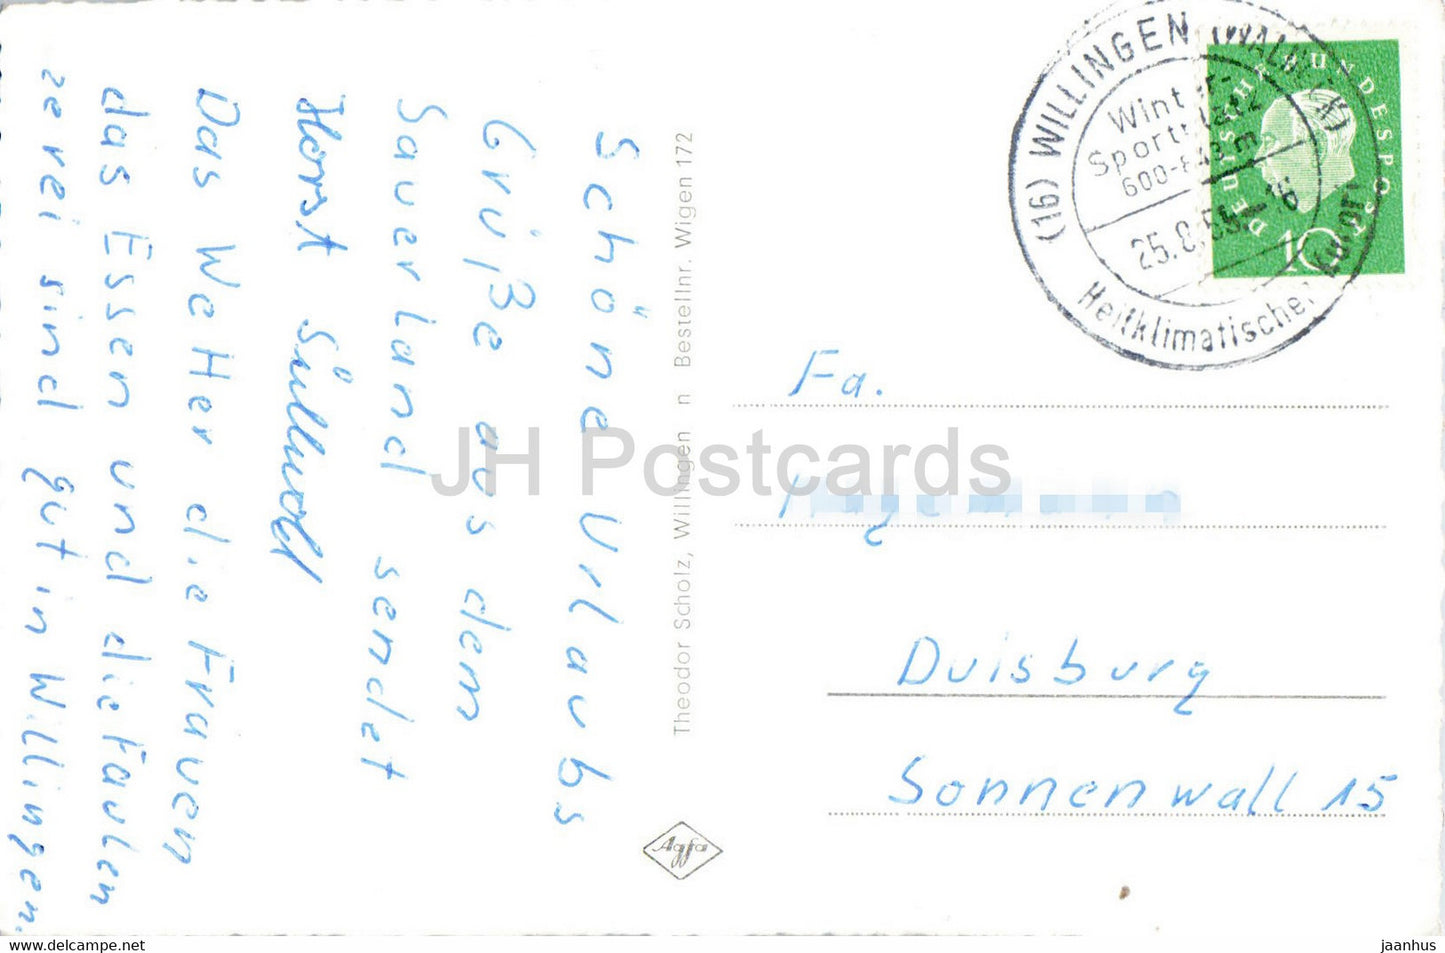 Willingen - Waldeck - Hermeketal - Hoppecketal - animals - deer - old postcard - 1959 - Germany - used